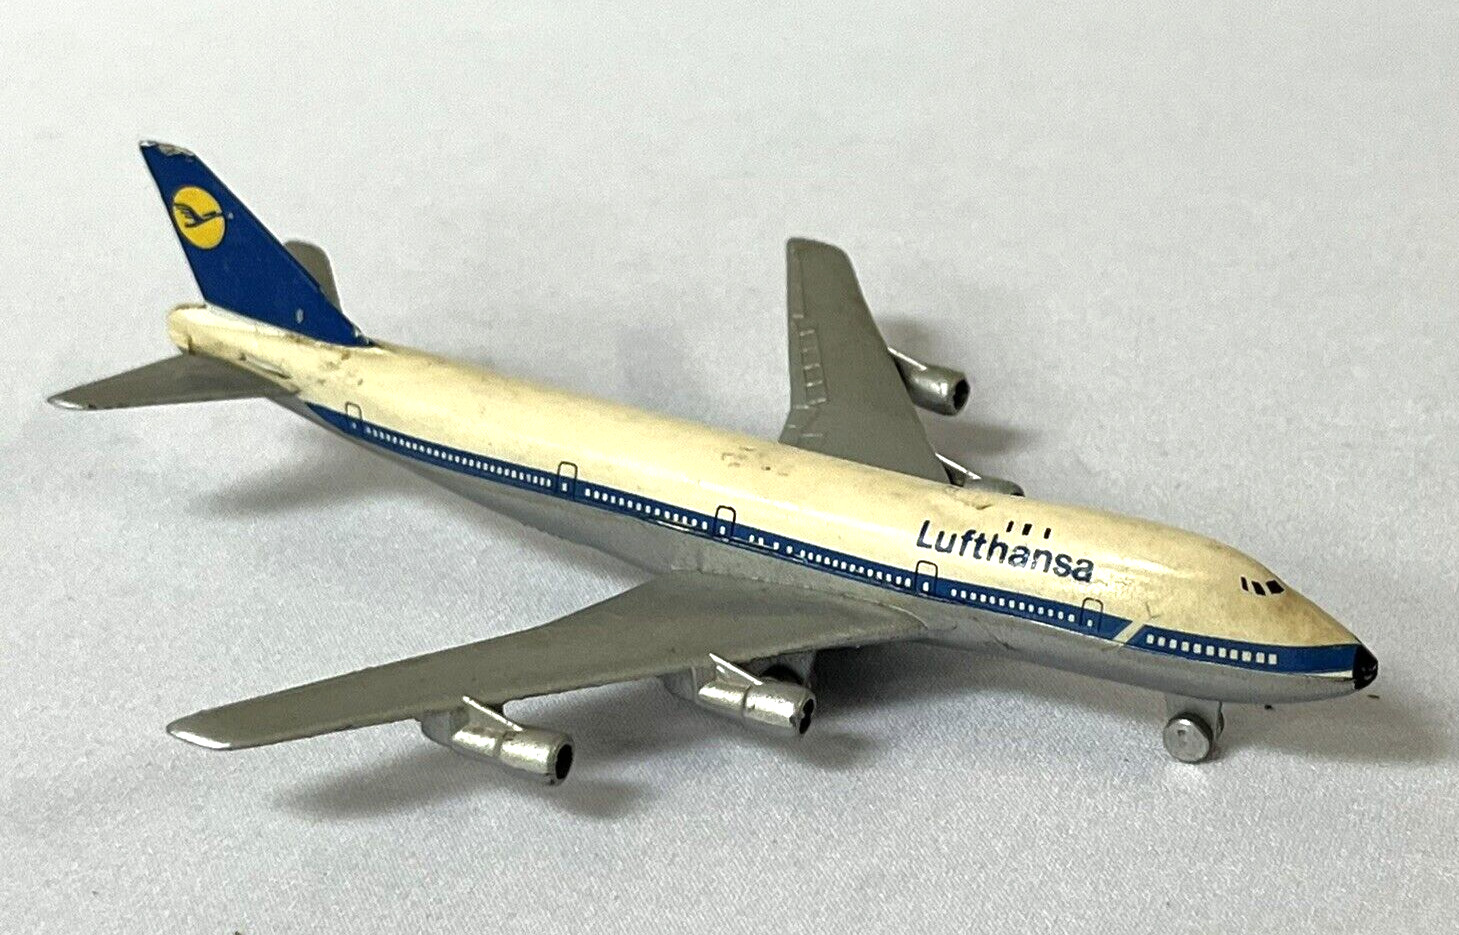 Schuco Aviation Lufthansa German Airlines Miniature Air Plane Boeing 747 335-793